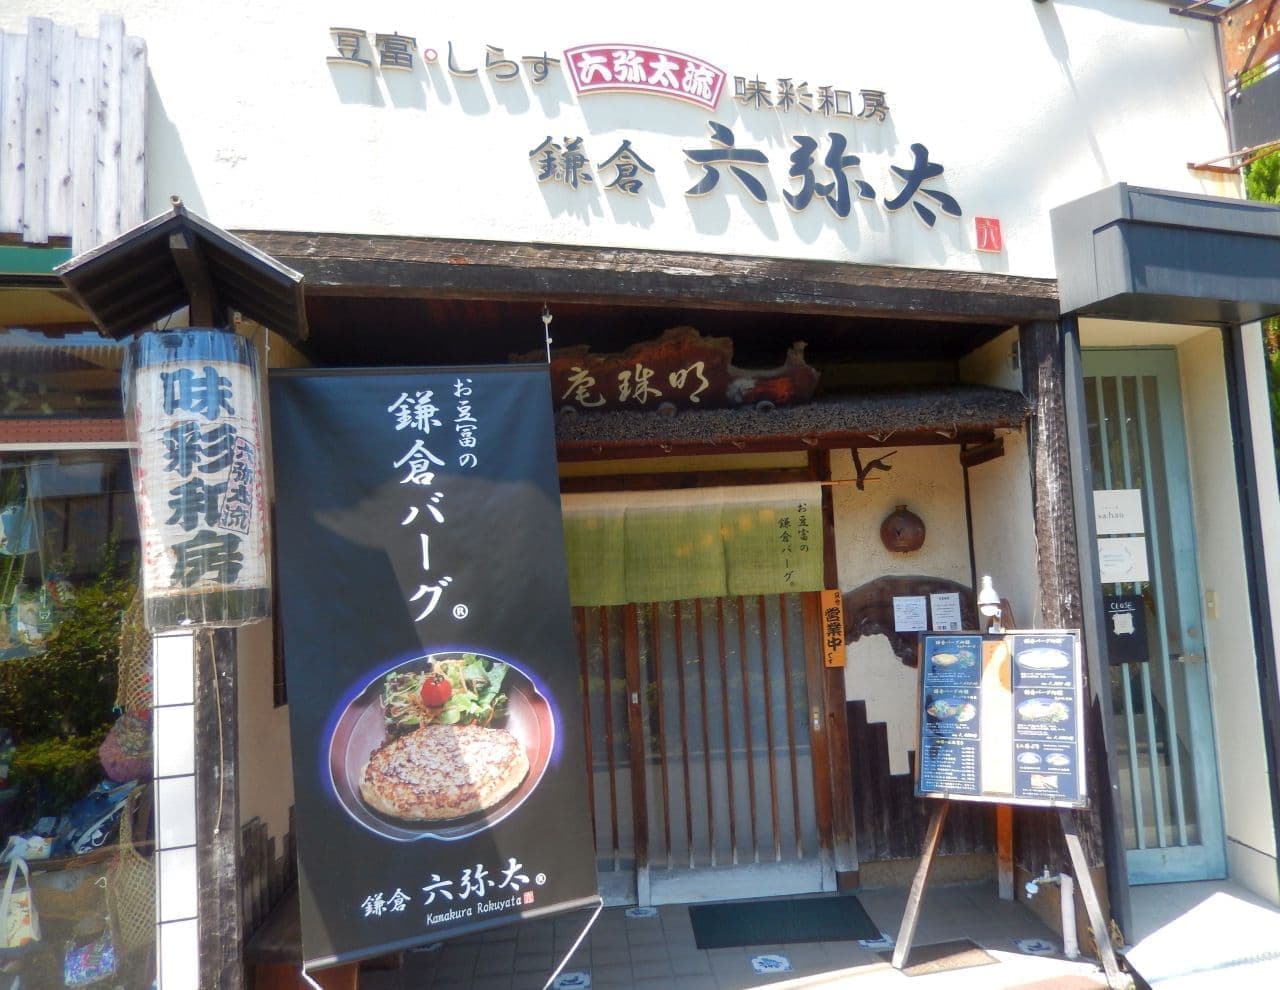 六弥太のお豆冨ハンバーグ「鎌倉バーグ」